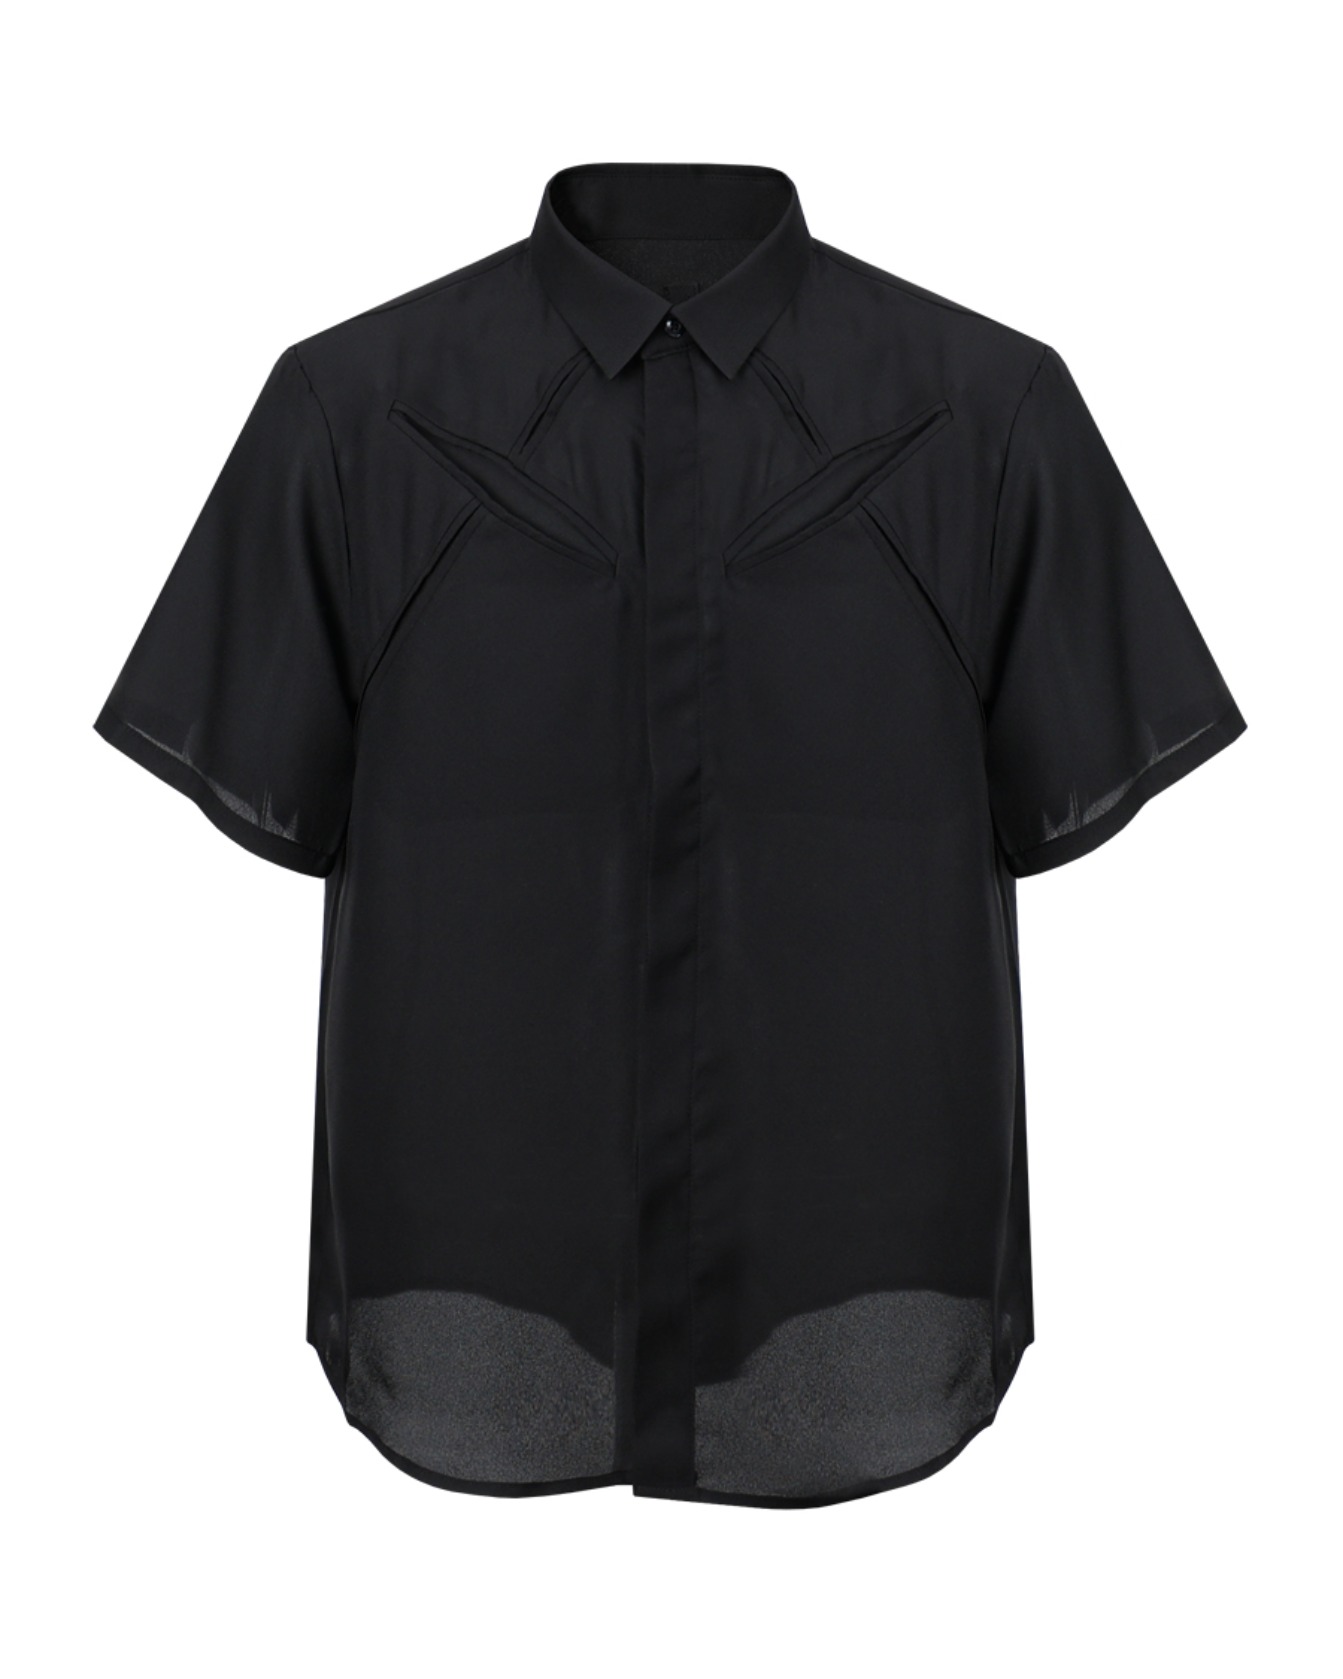 X JIP Shirts(Black)